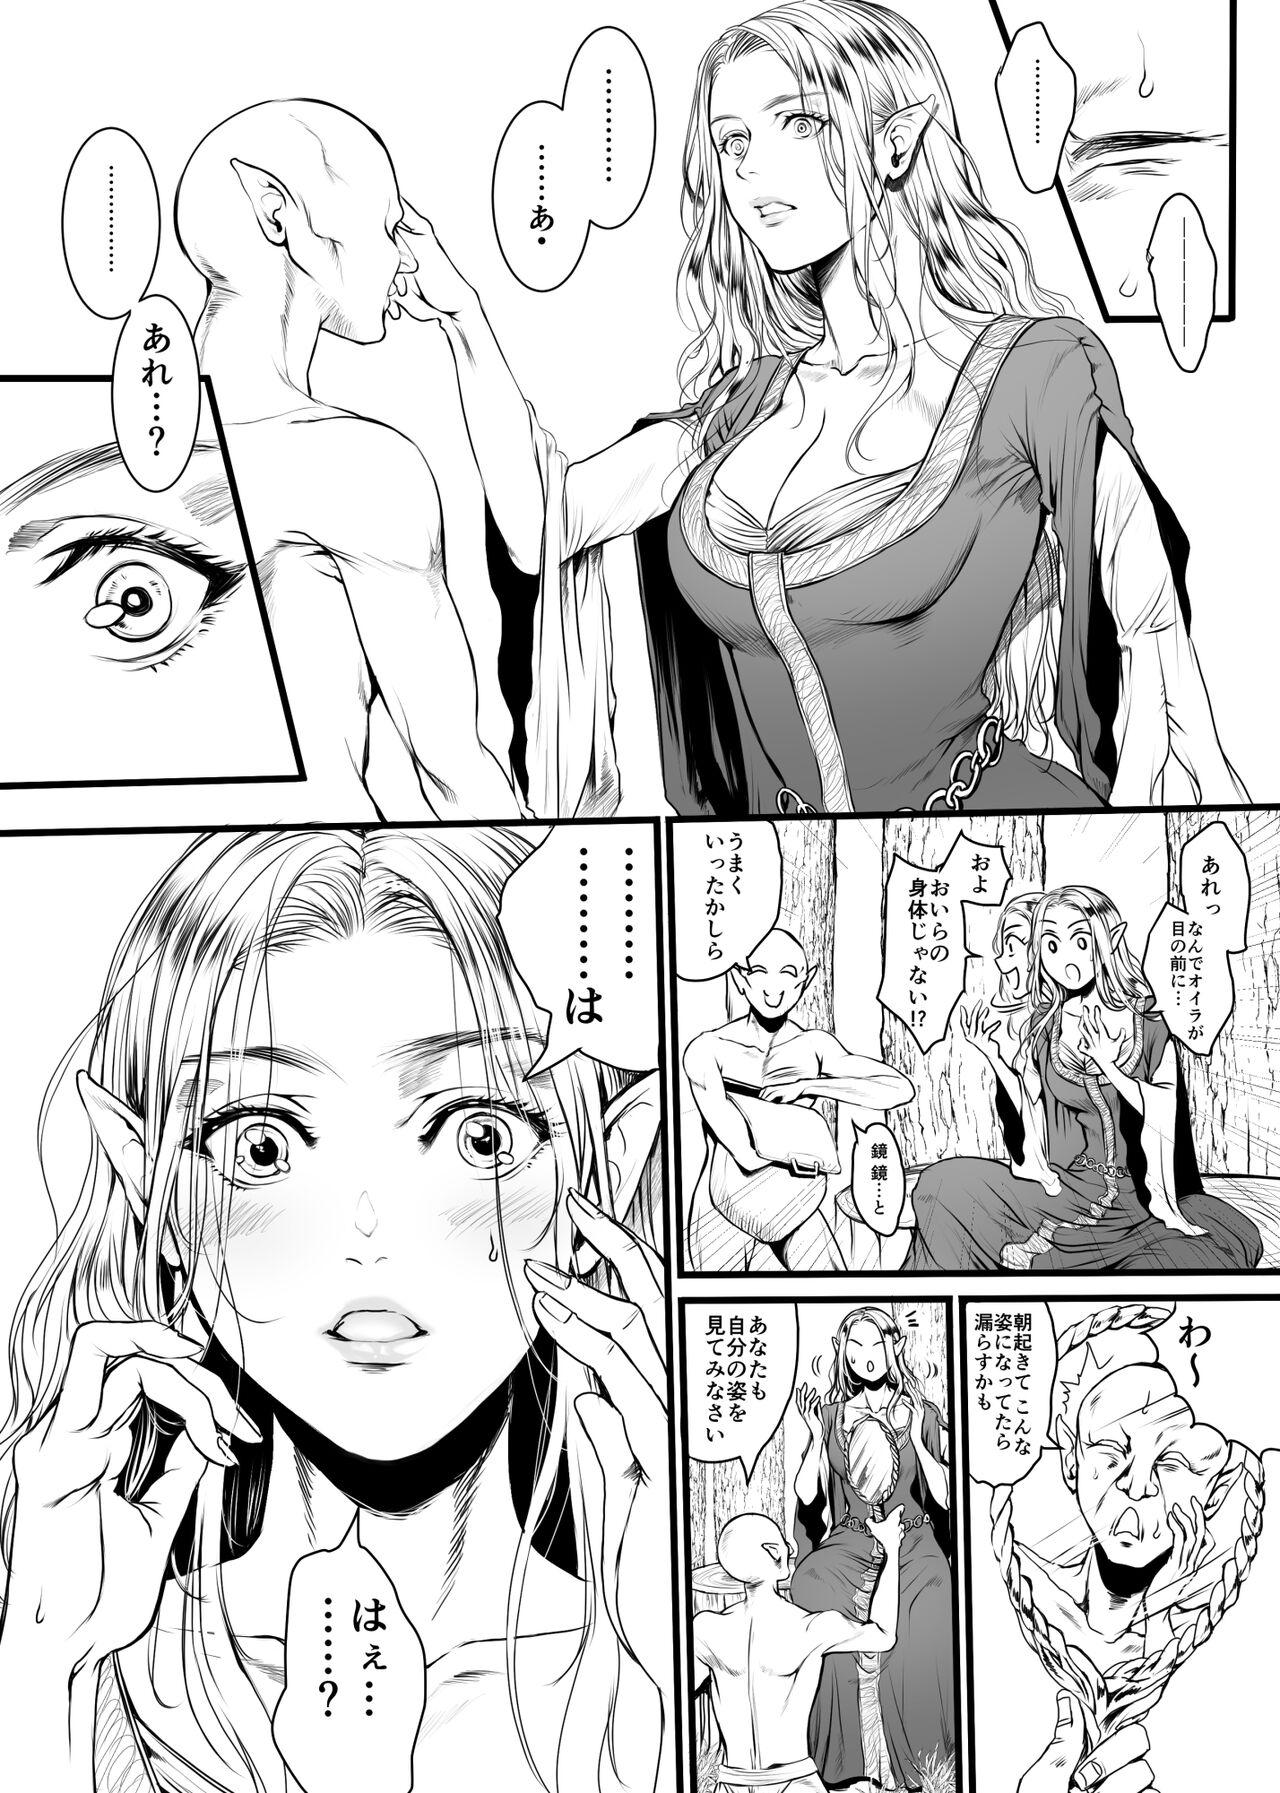 Bra Kansei wo Akiramta TSF Manga Jacking Off - Page 3